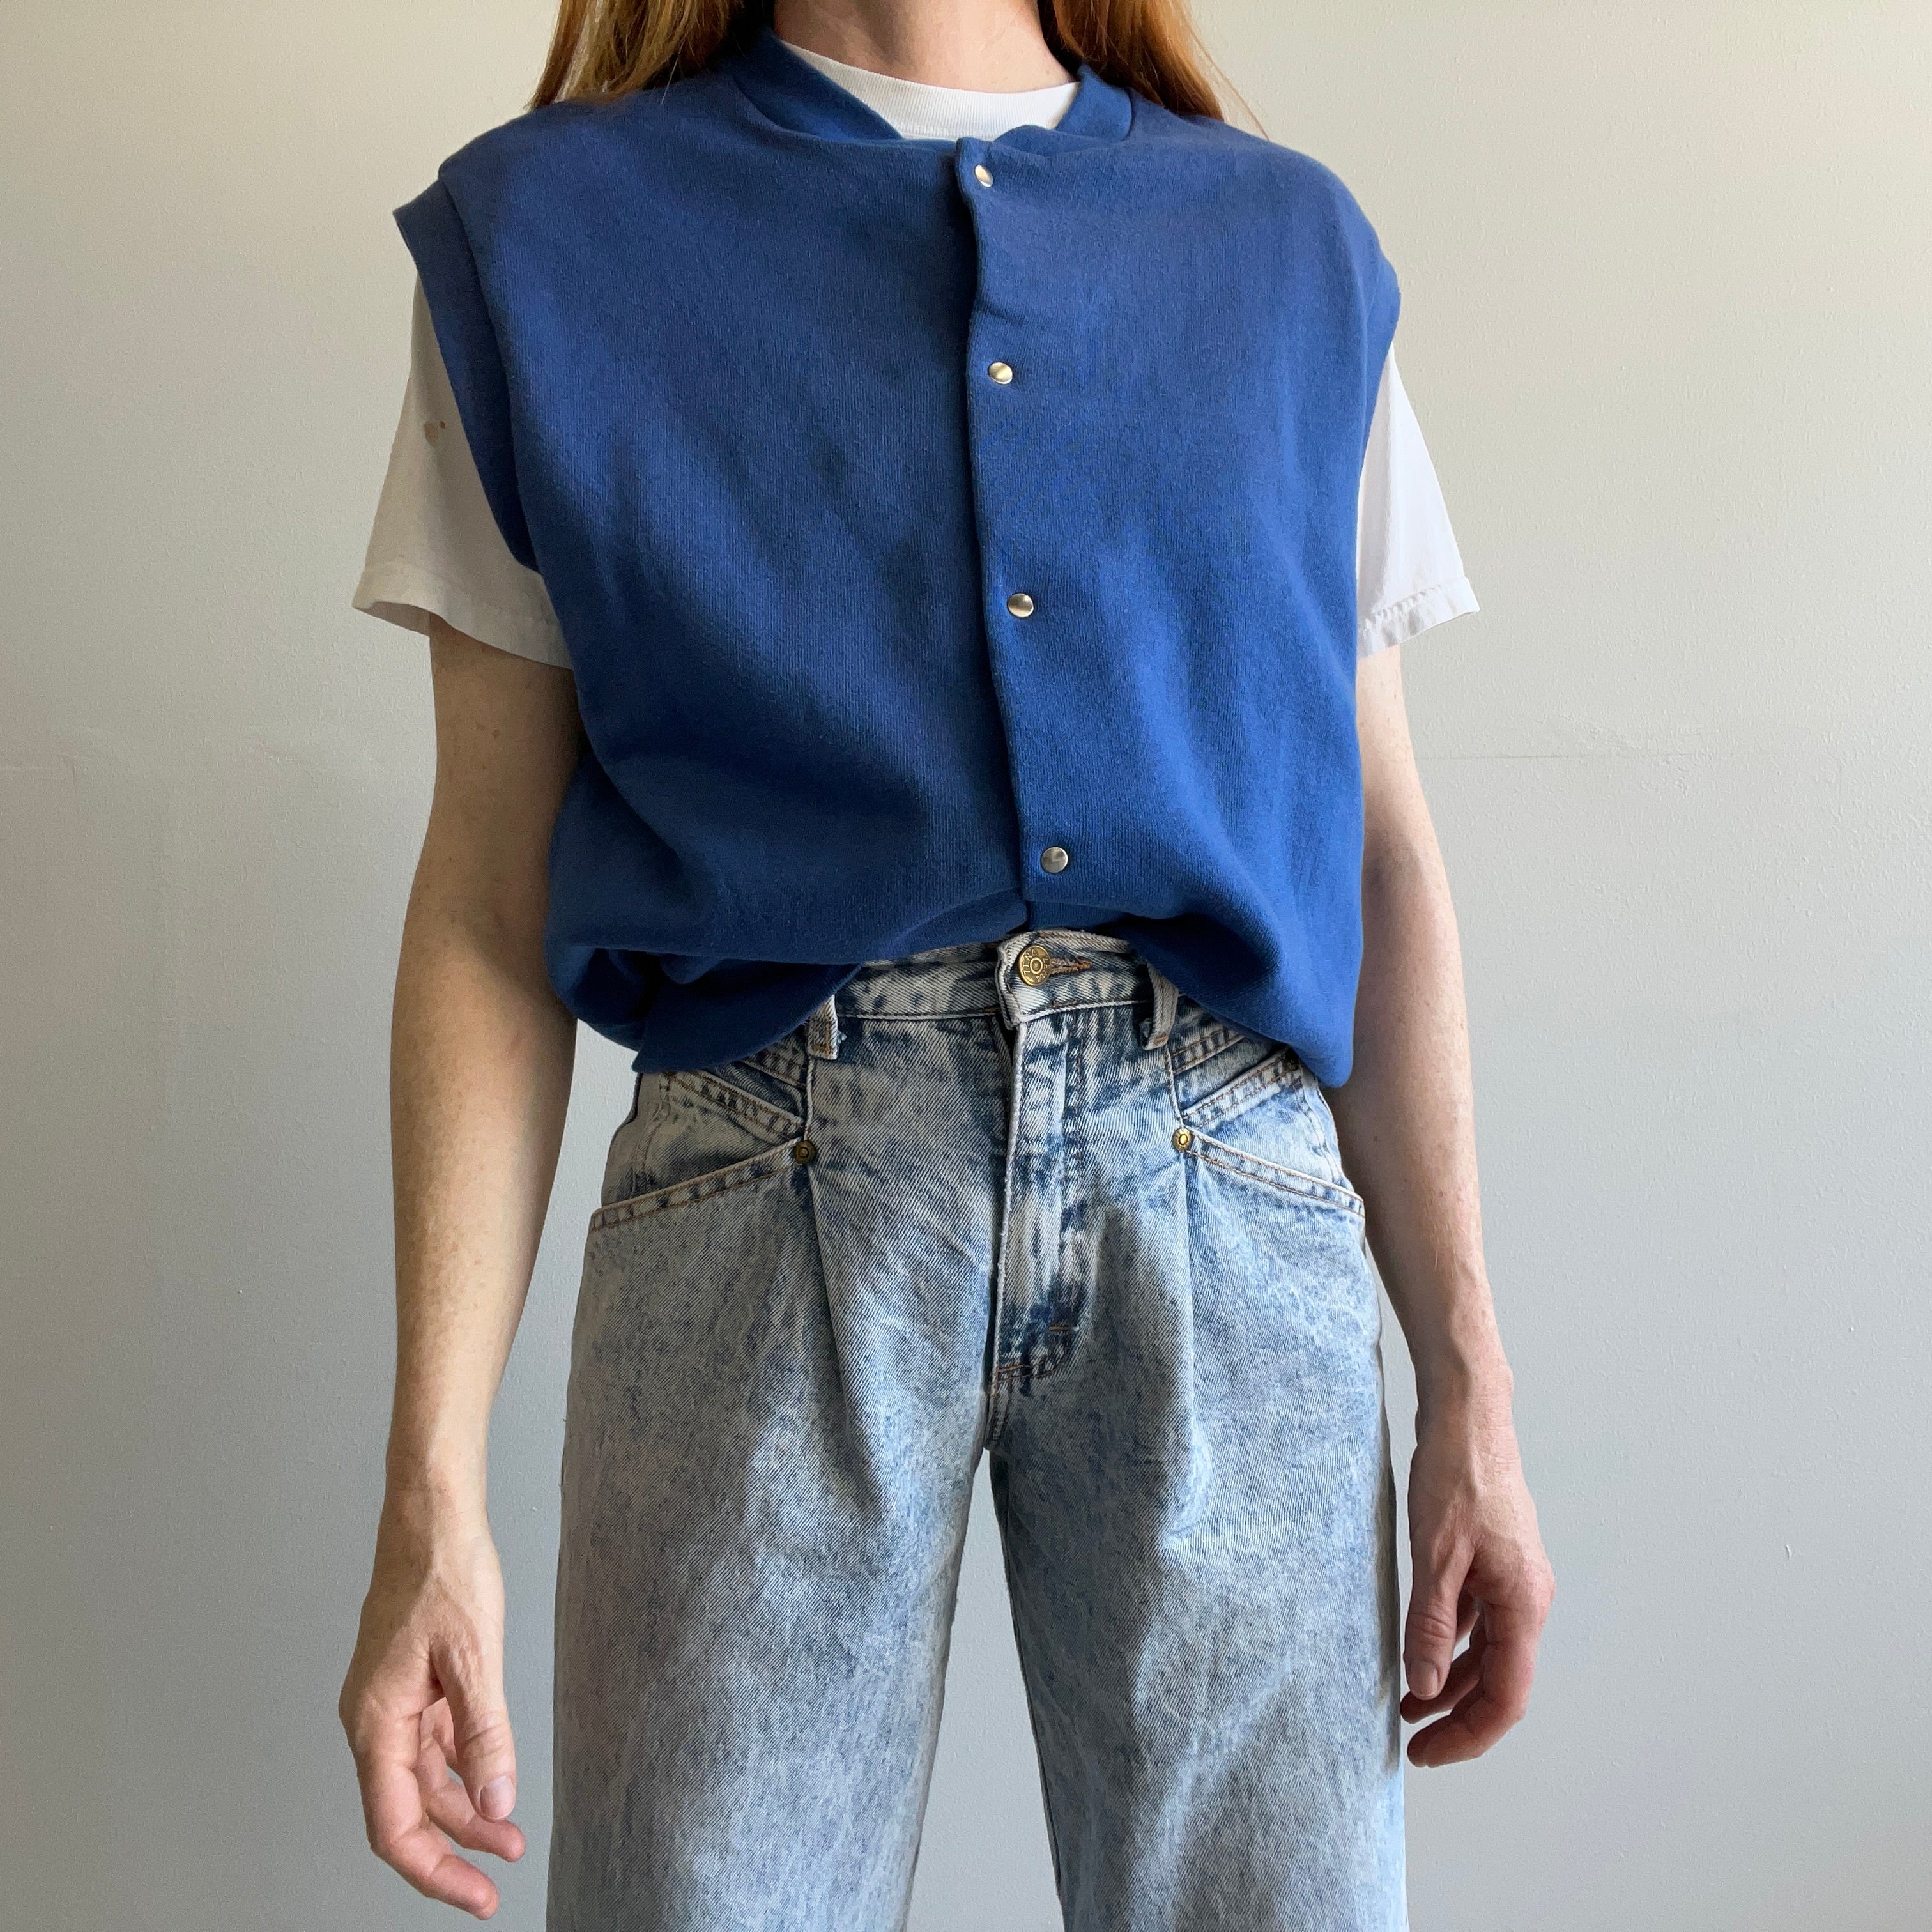 Veste molletonnée bleue à bouton-pression années 1980